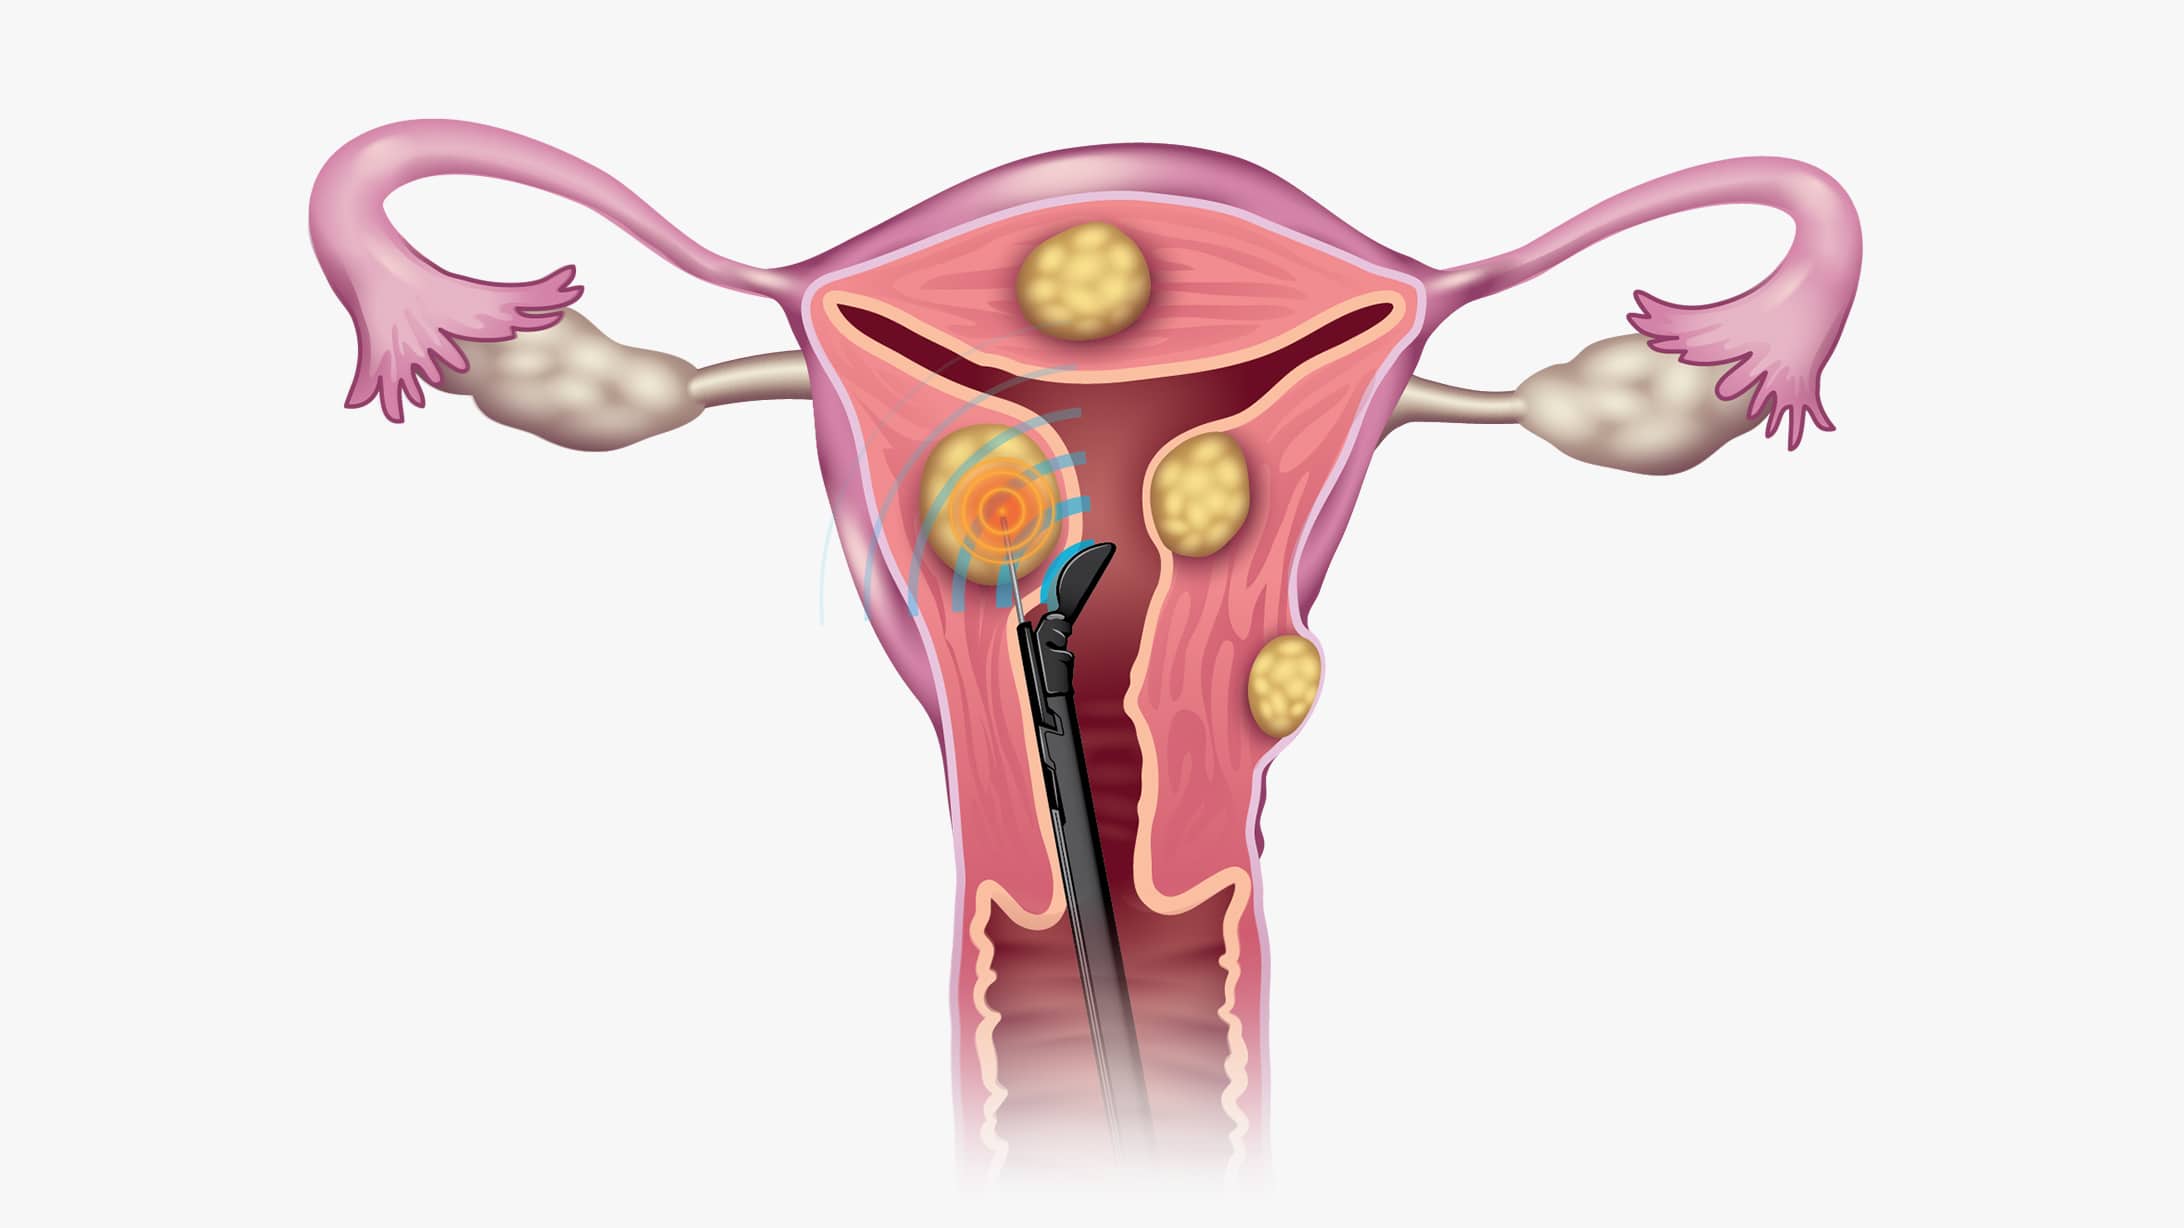 Querschnitt der weiblichen Reproduktionsorgane . Dies zeigt die Grafik